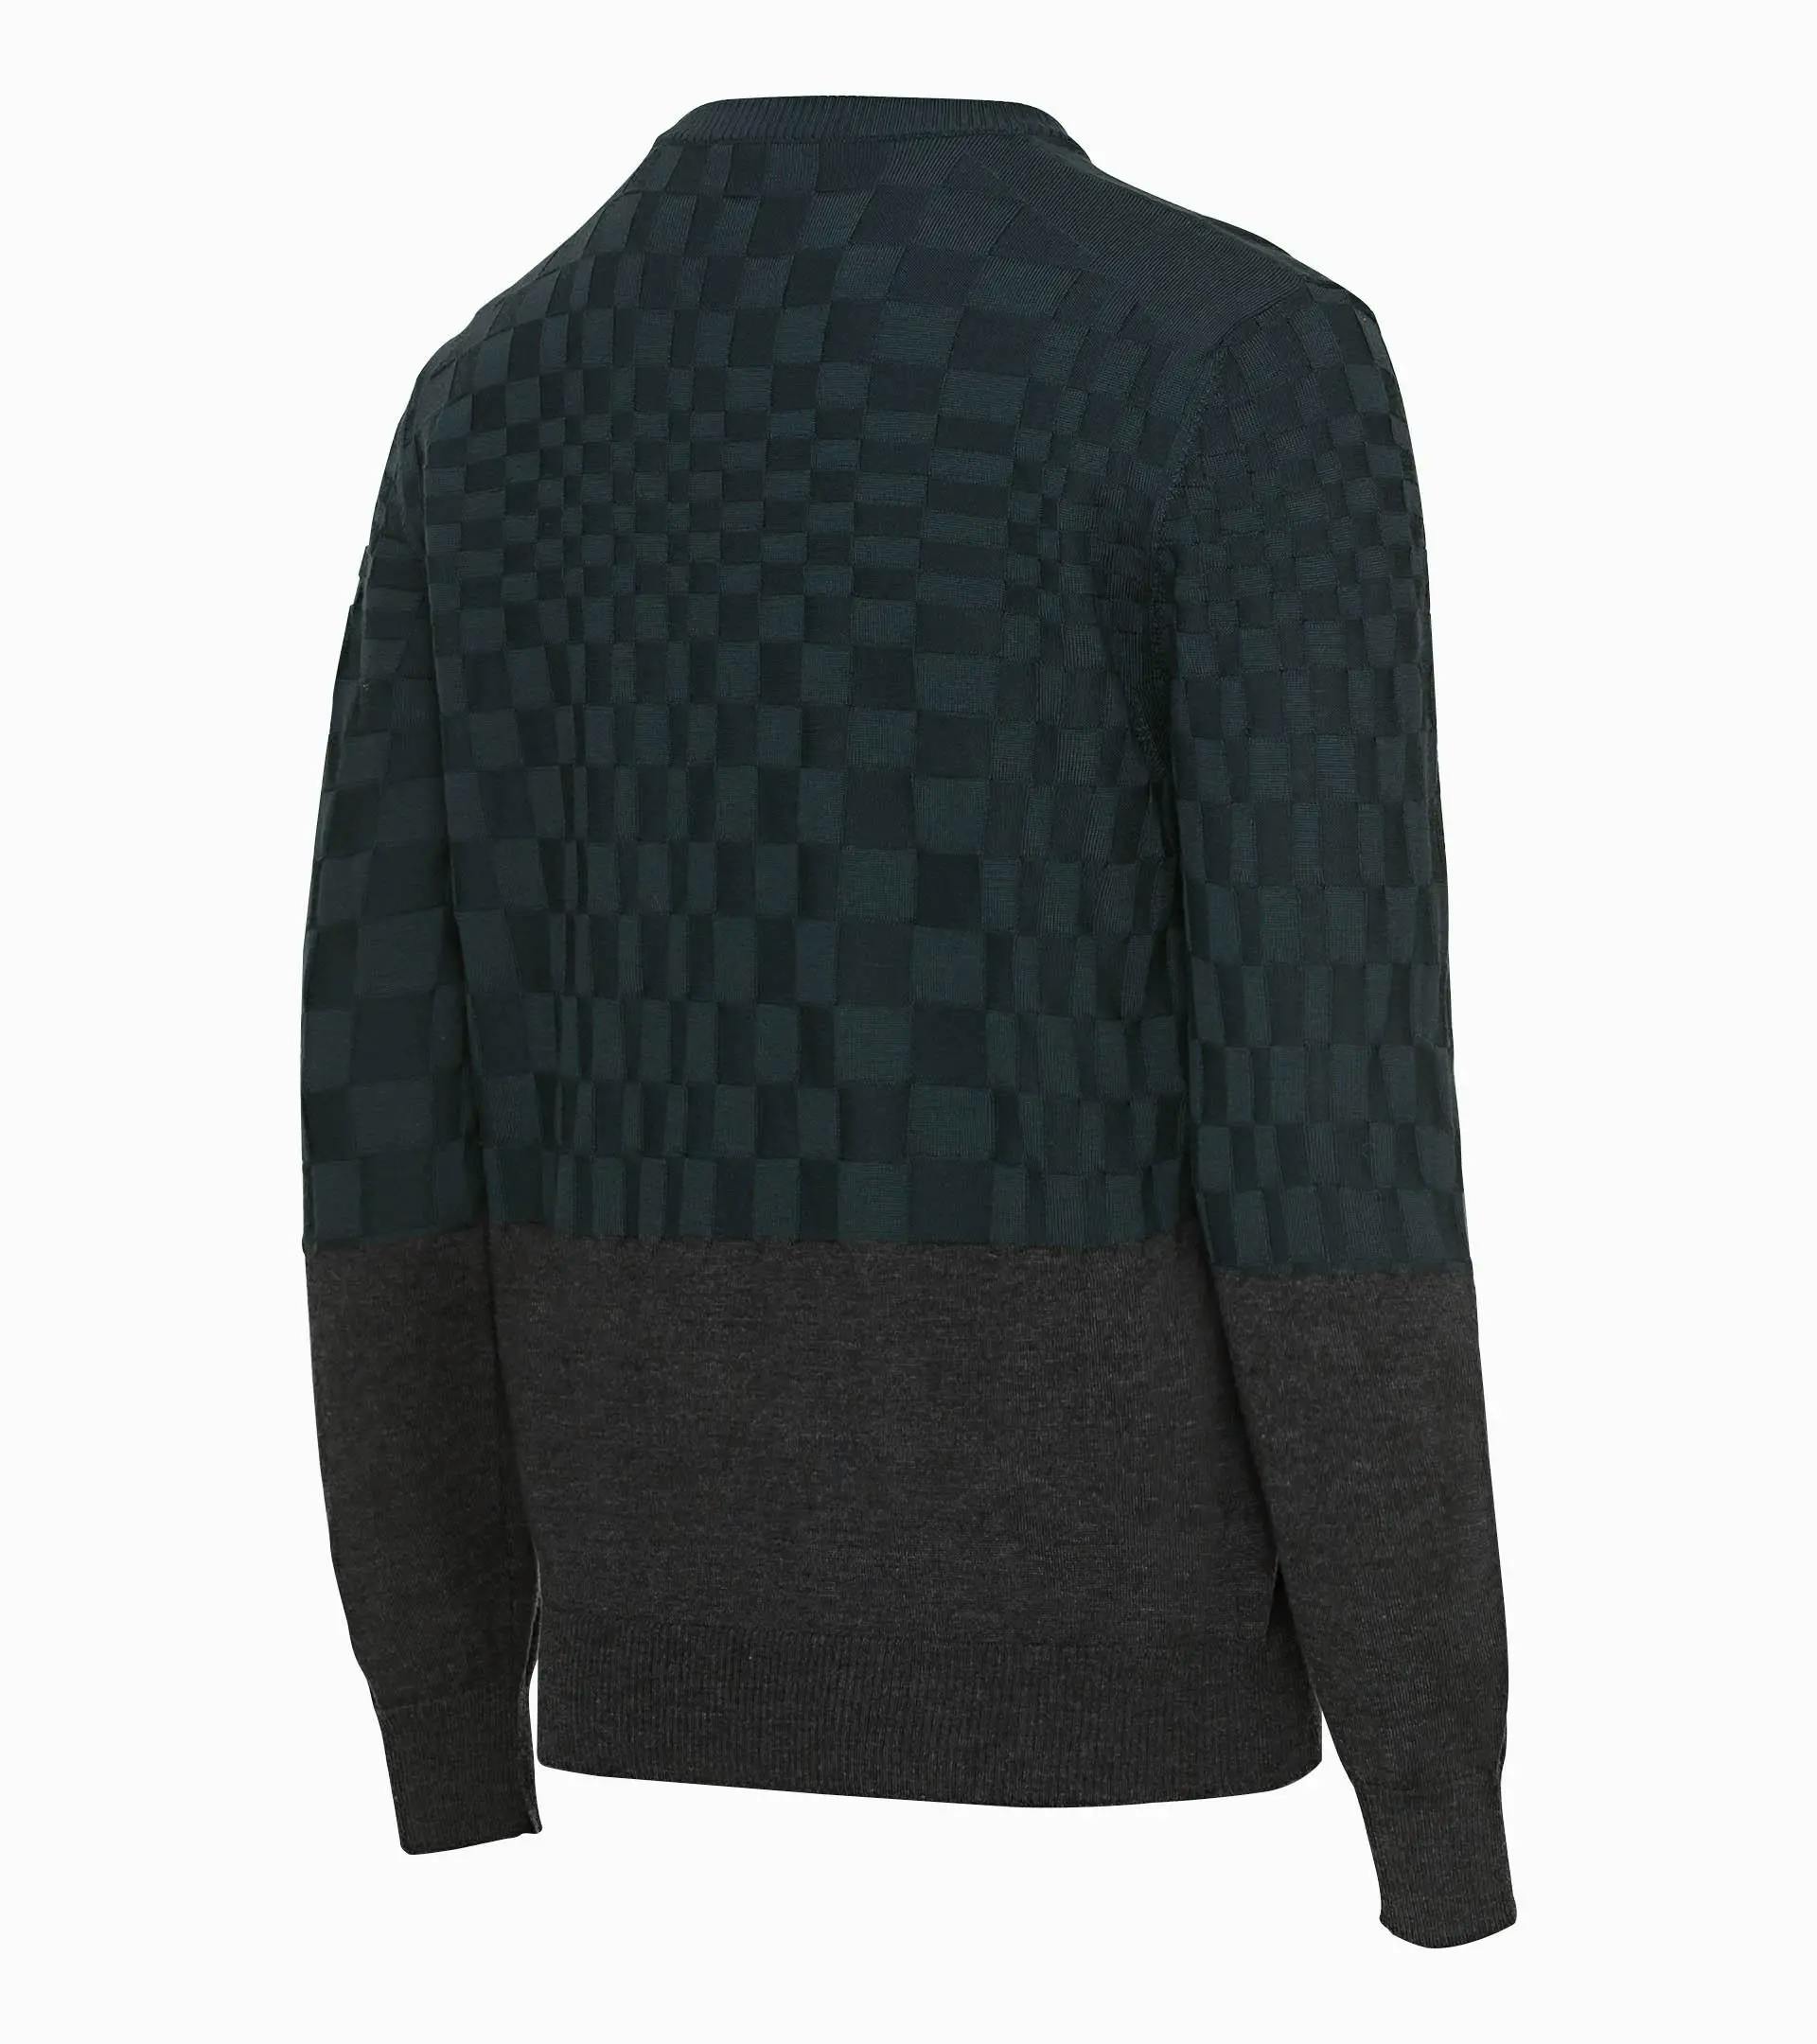 Shop Louis Vuitton DAMIER Men's Sweaters